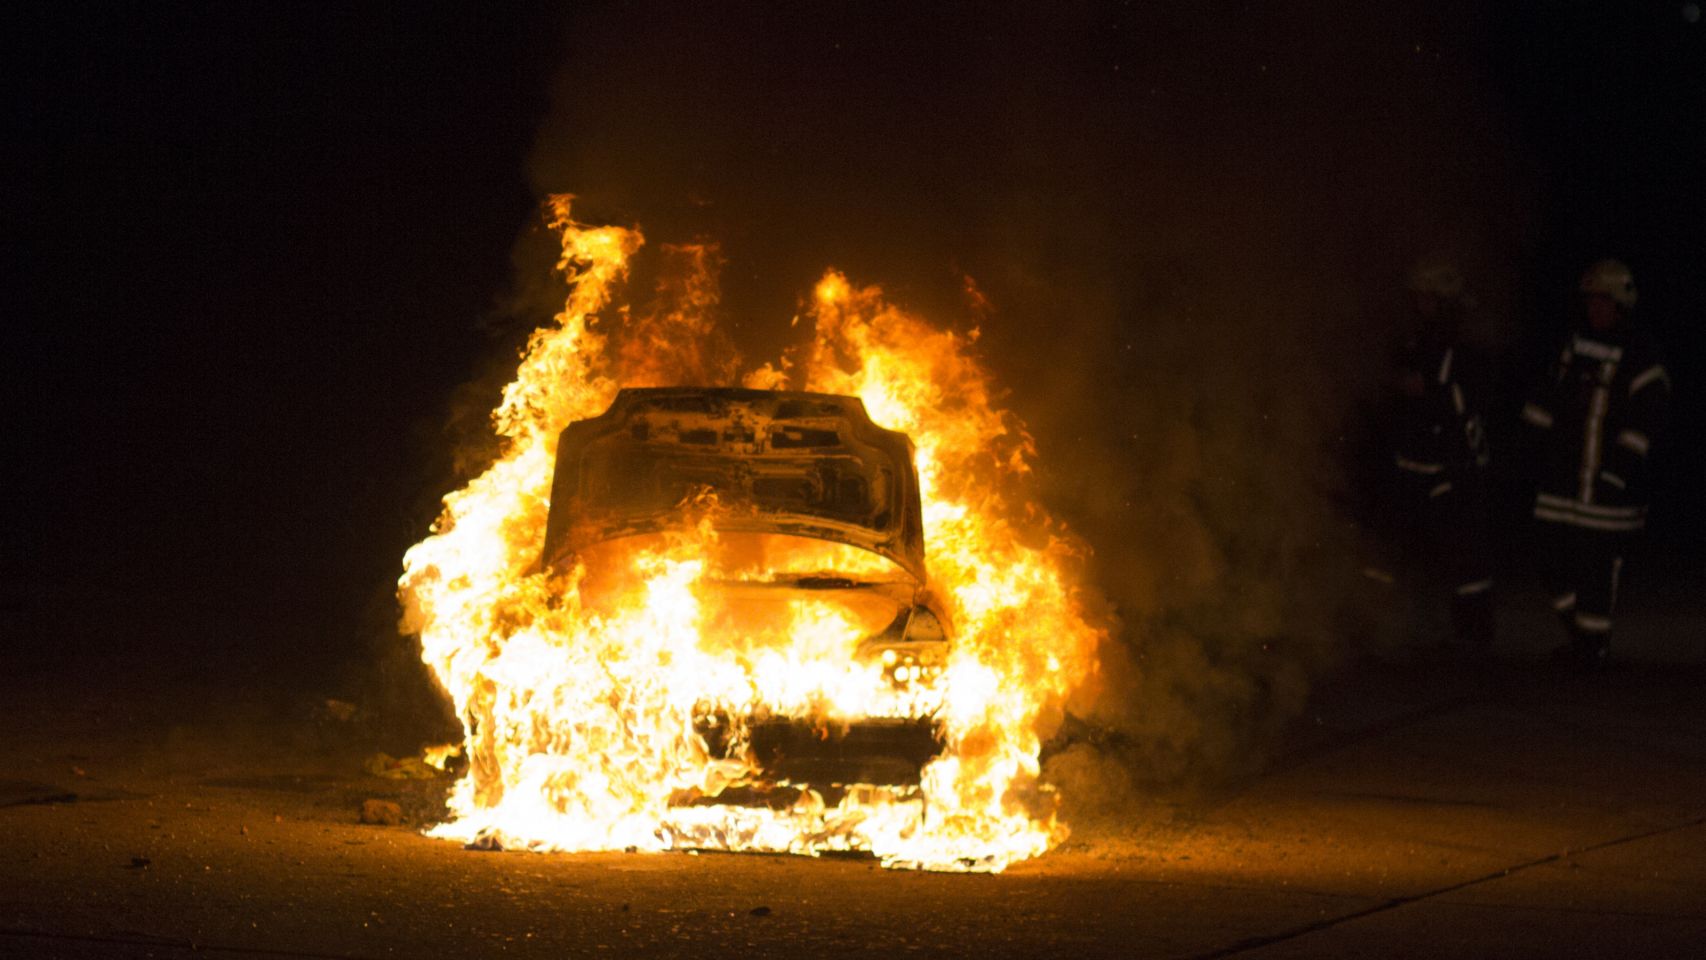 Foto de archivo de un vehículo ardiendo.